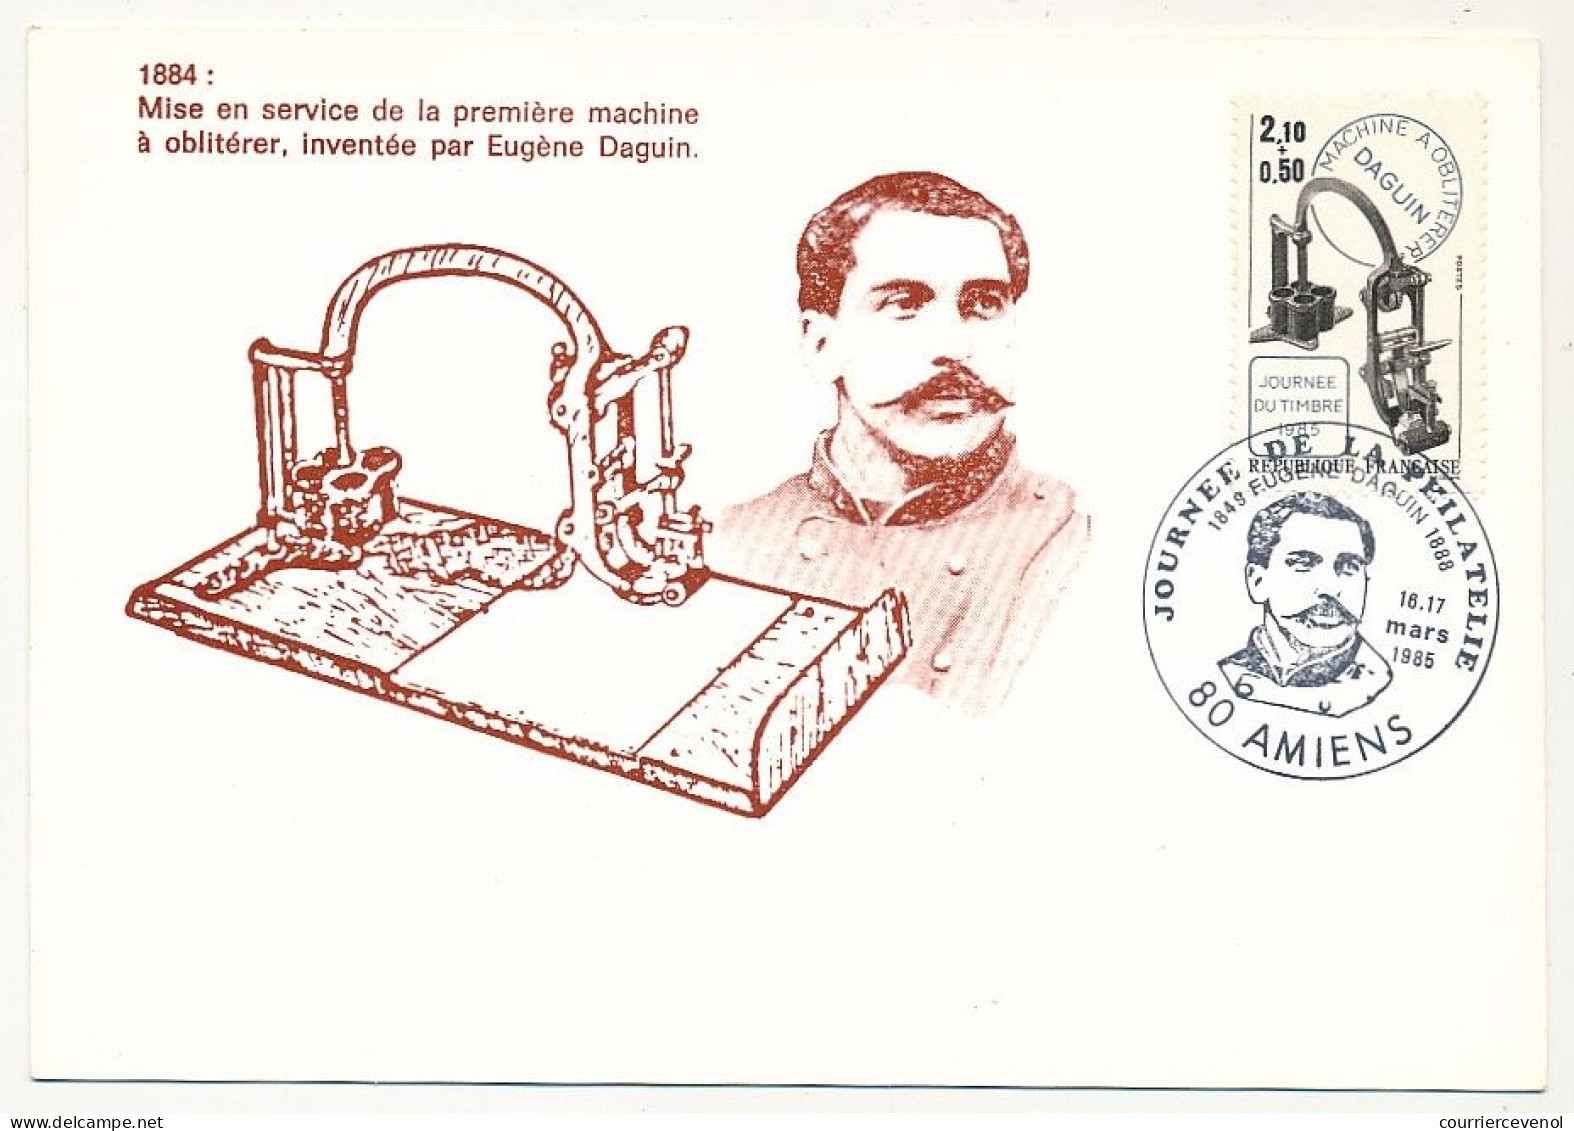 FRANCE => 80 - AMIENS - Carte Maximum "Journée De La Philatélie" 16/17 Mars 1985 - 2,10 + 0,50 Machine Daguin - Lettres & Documents